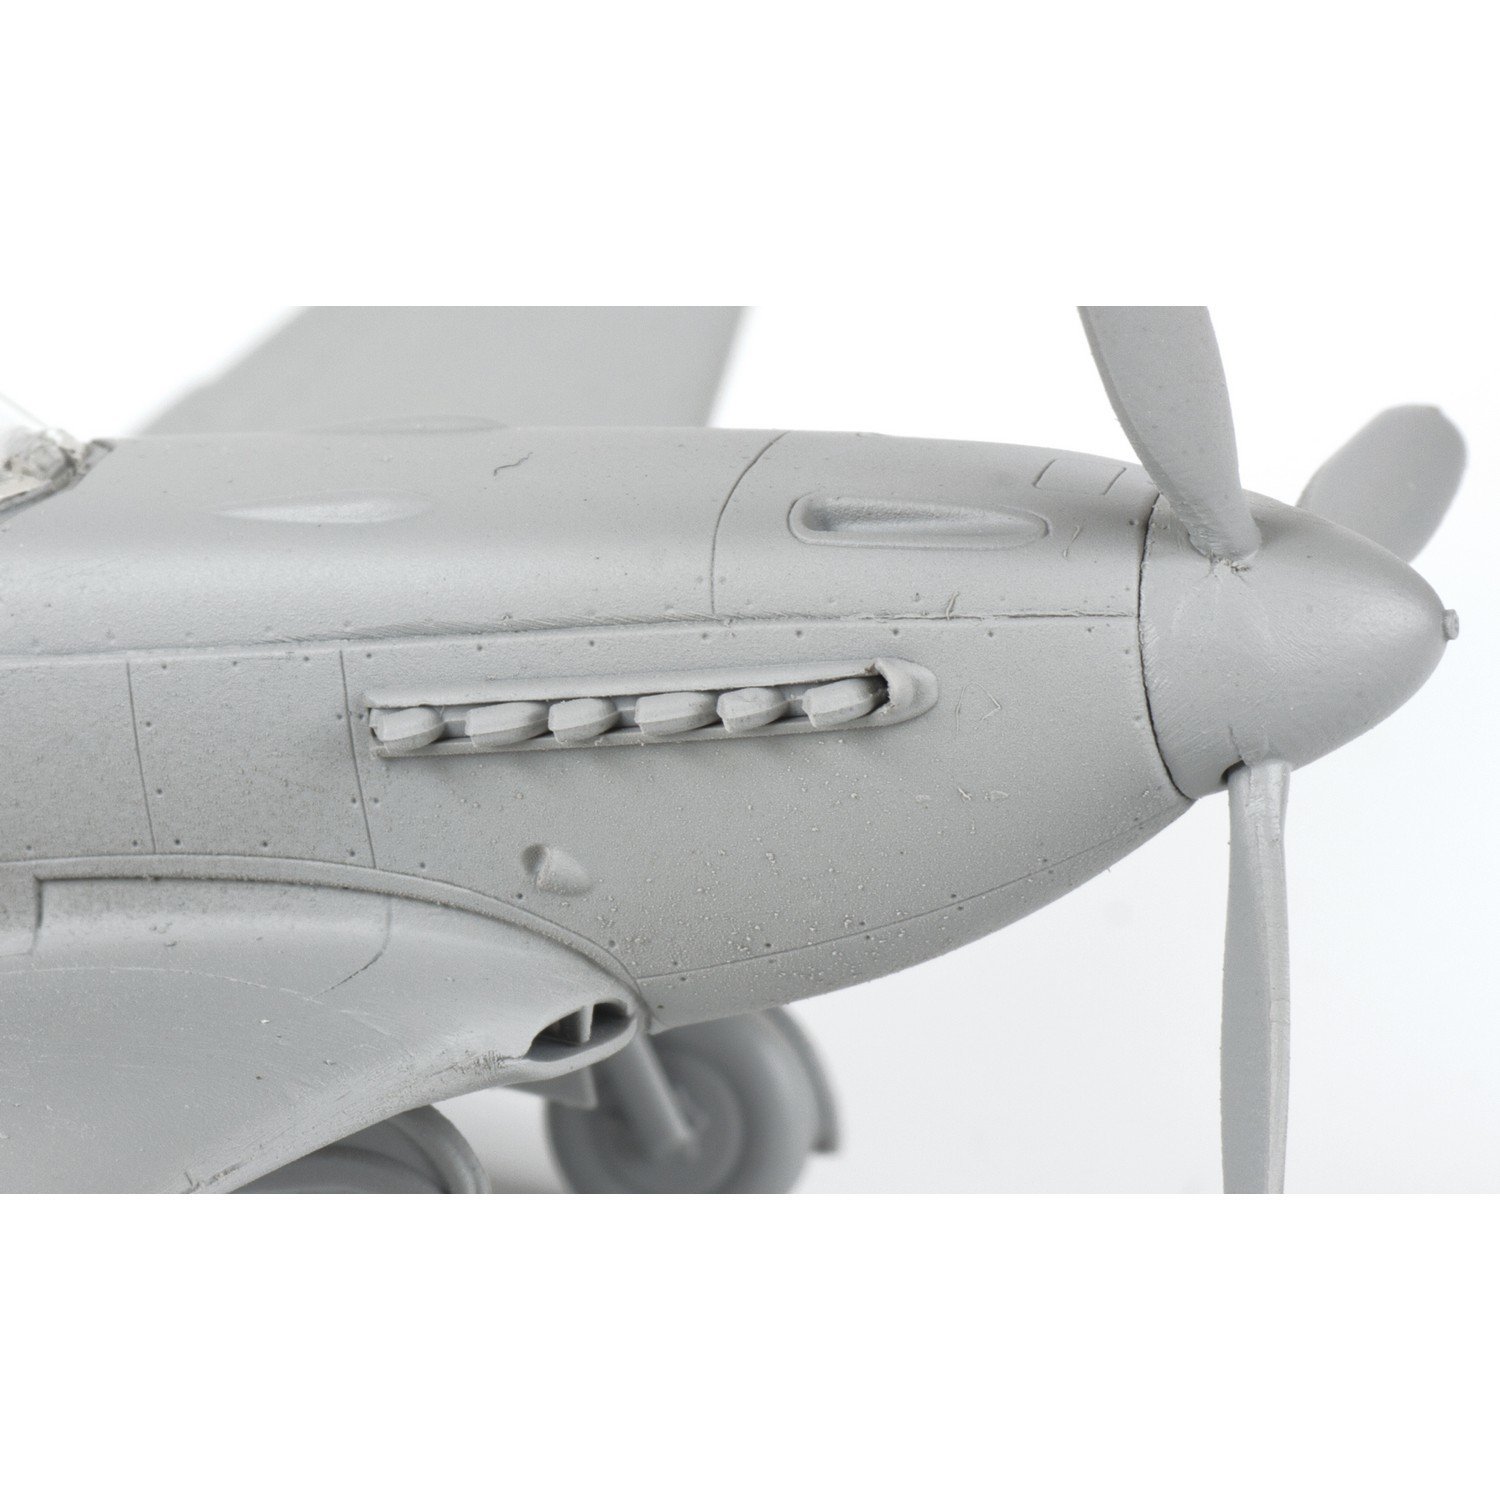 Модель для сборки Звезда Советский истребитель Як-3 - фото 4